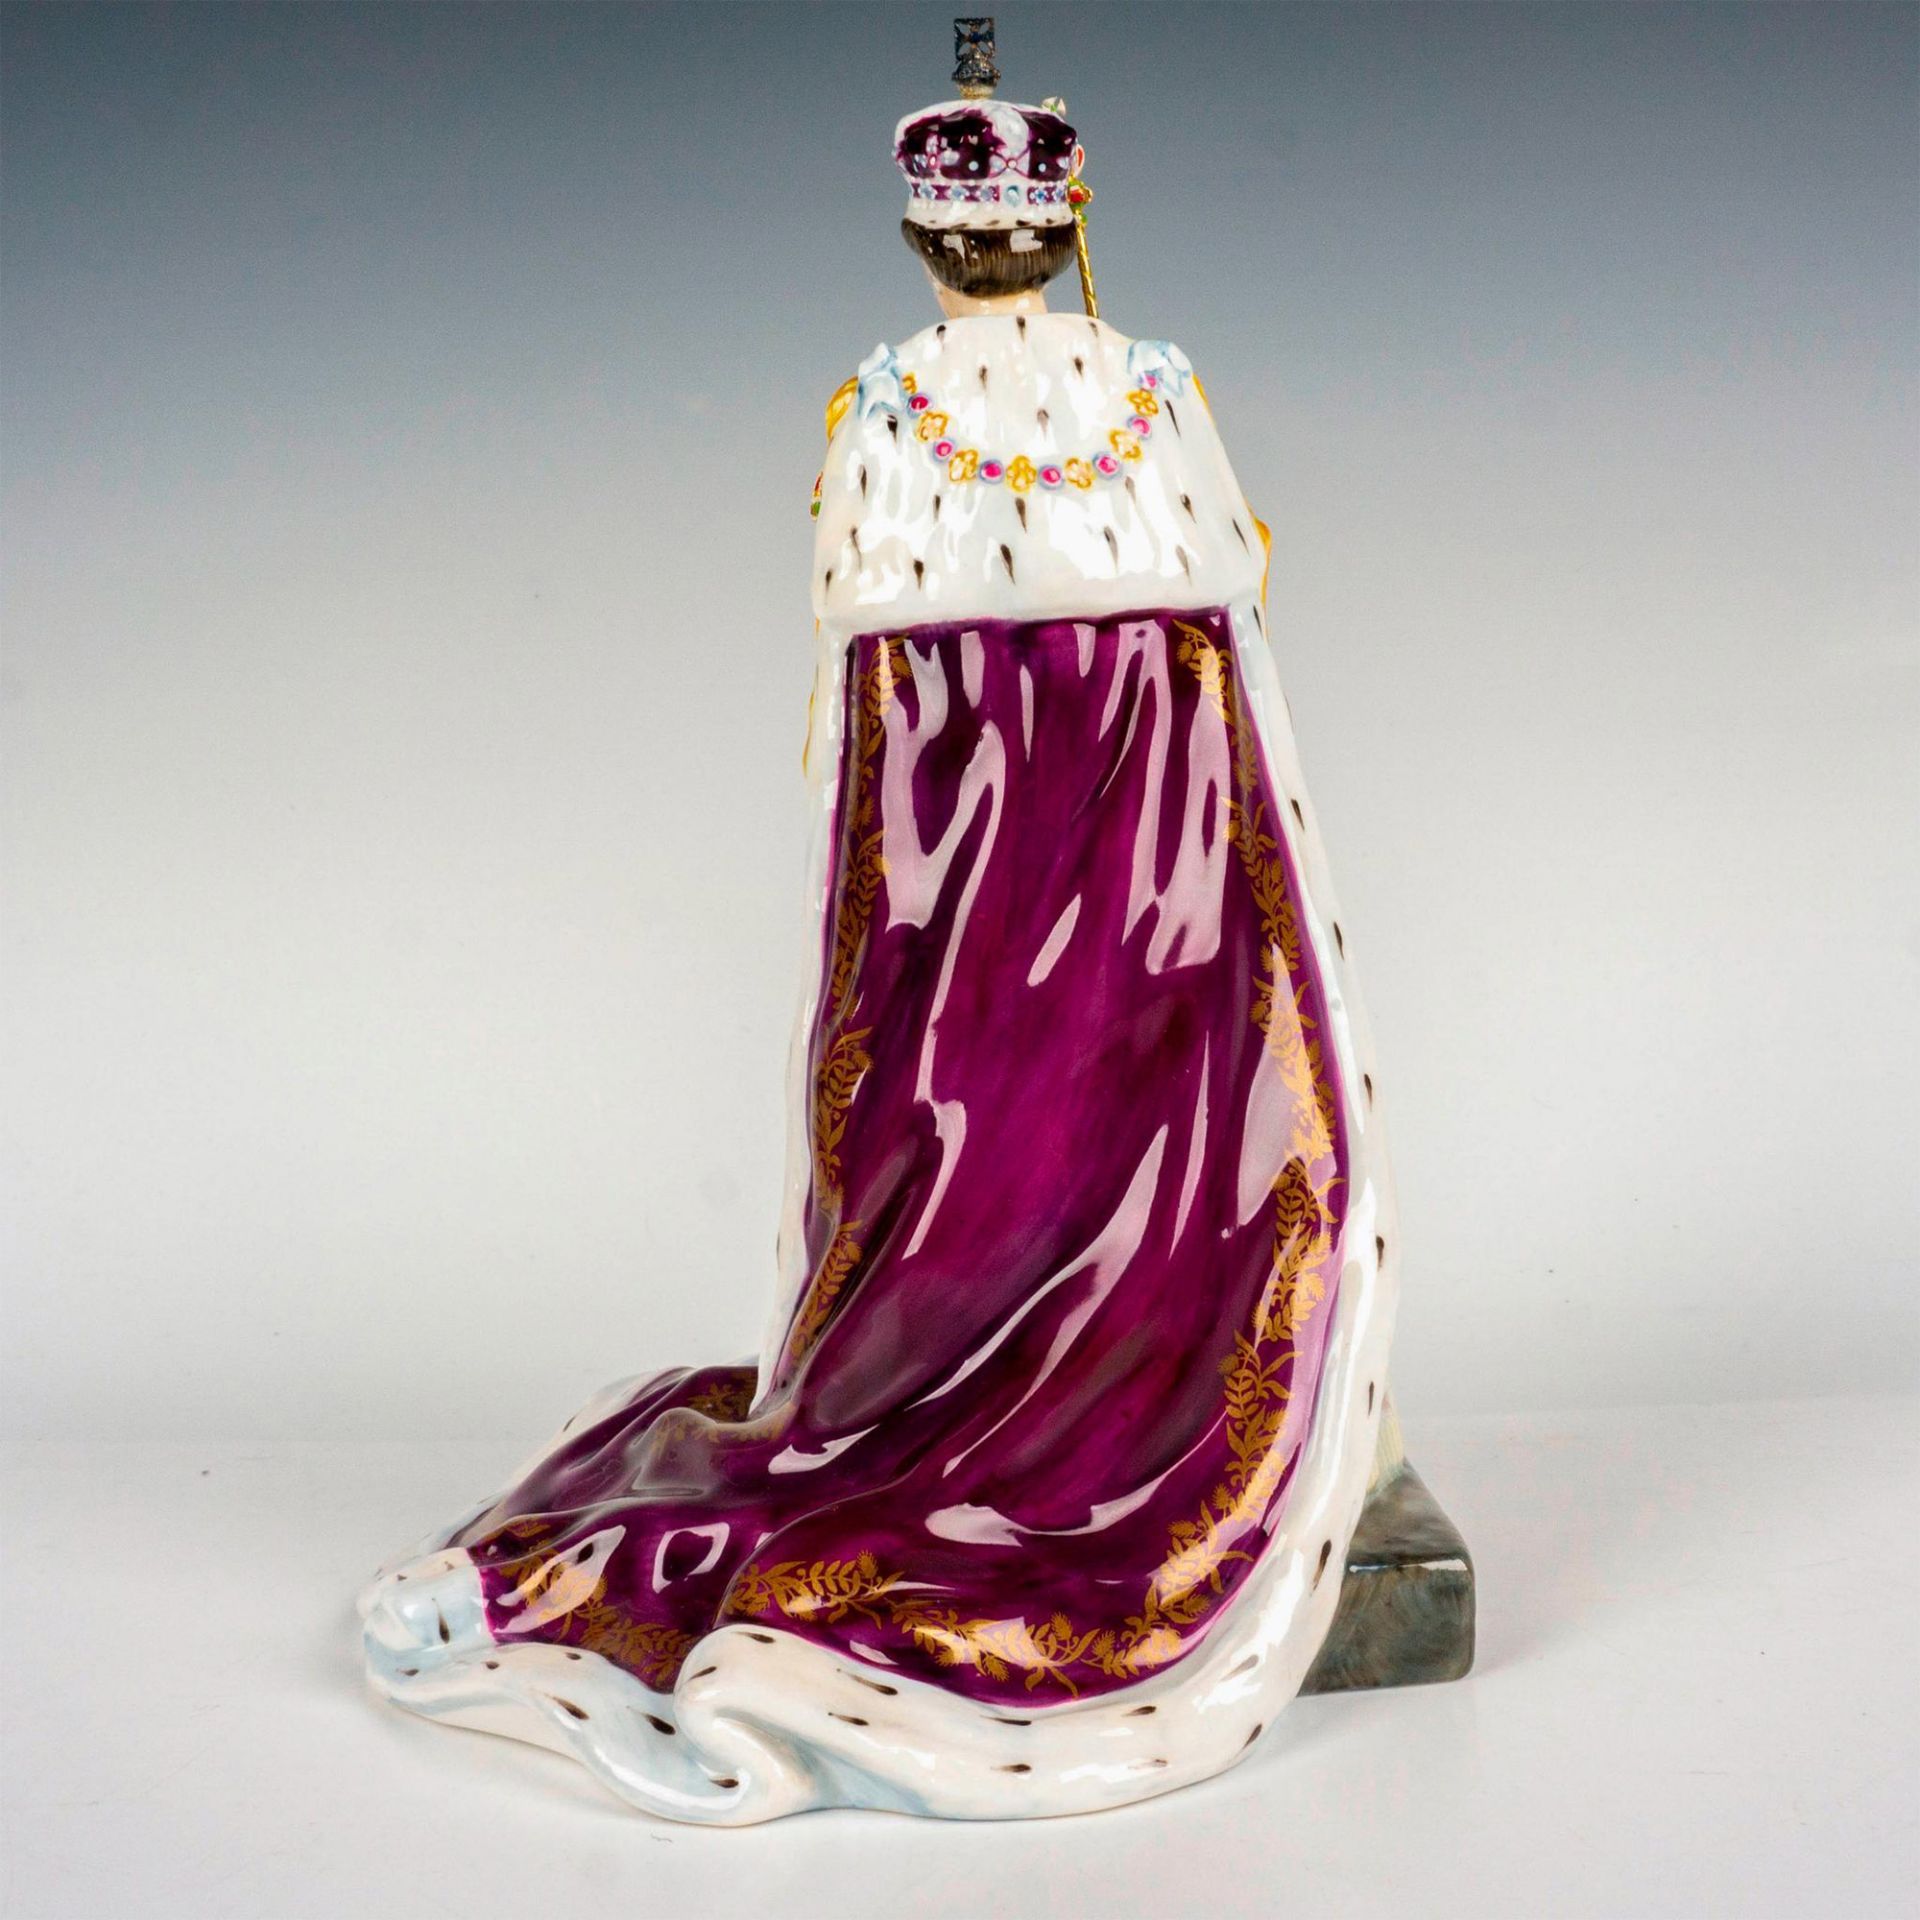 Queen Elizabeth II - HN3436 - Royal Doulton Figurine - Image 2 of 3